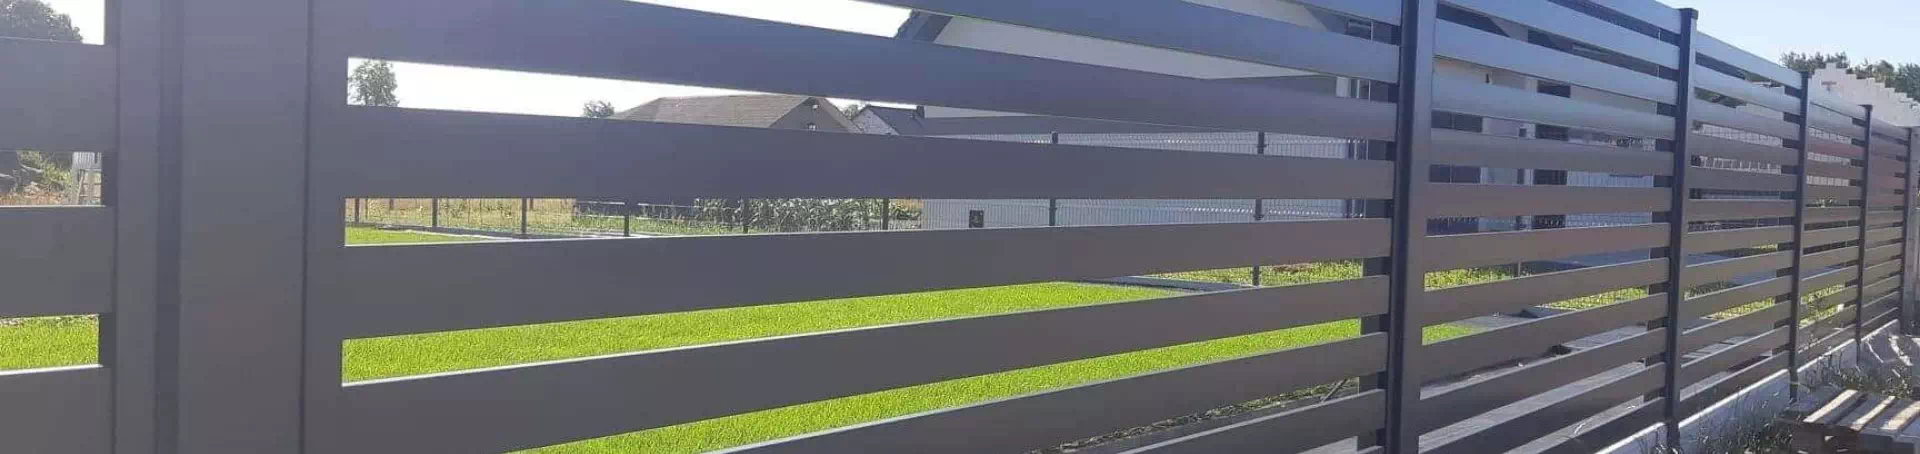 szare ogrodzenie panelowe i trawnik